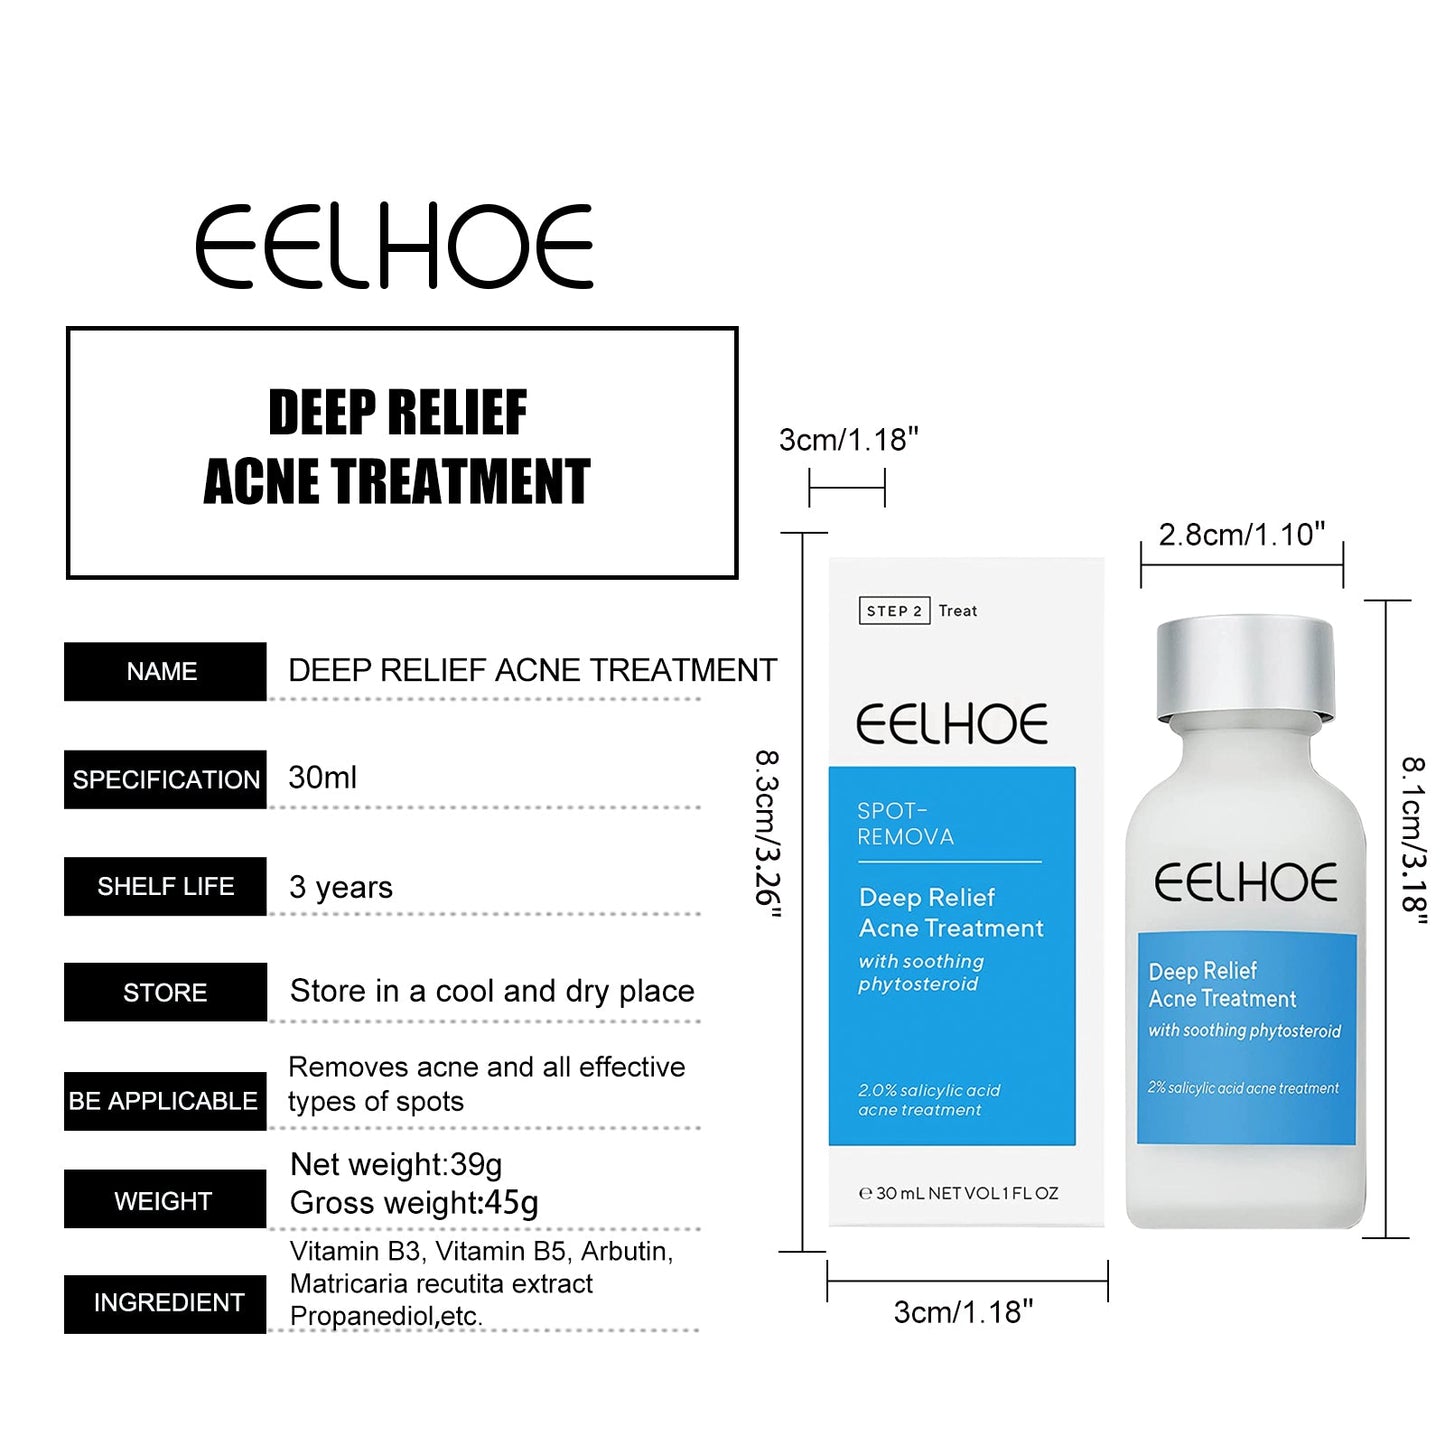 EELHOE™ Dark Spot and Acne Treatment Lotion